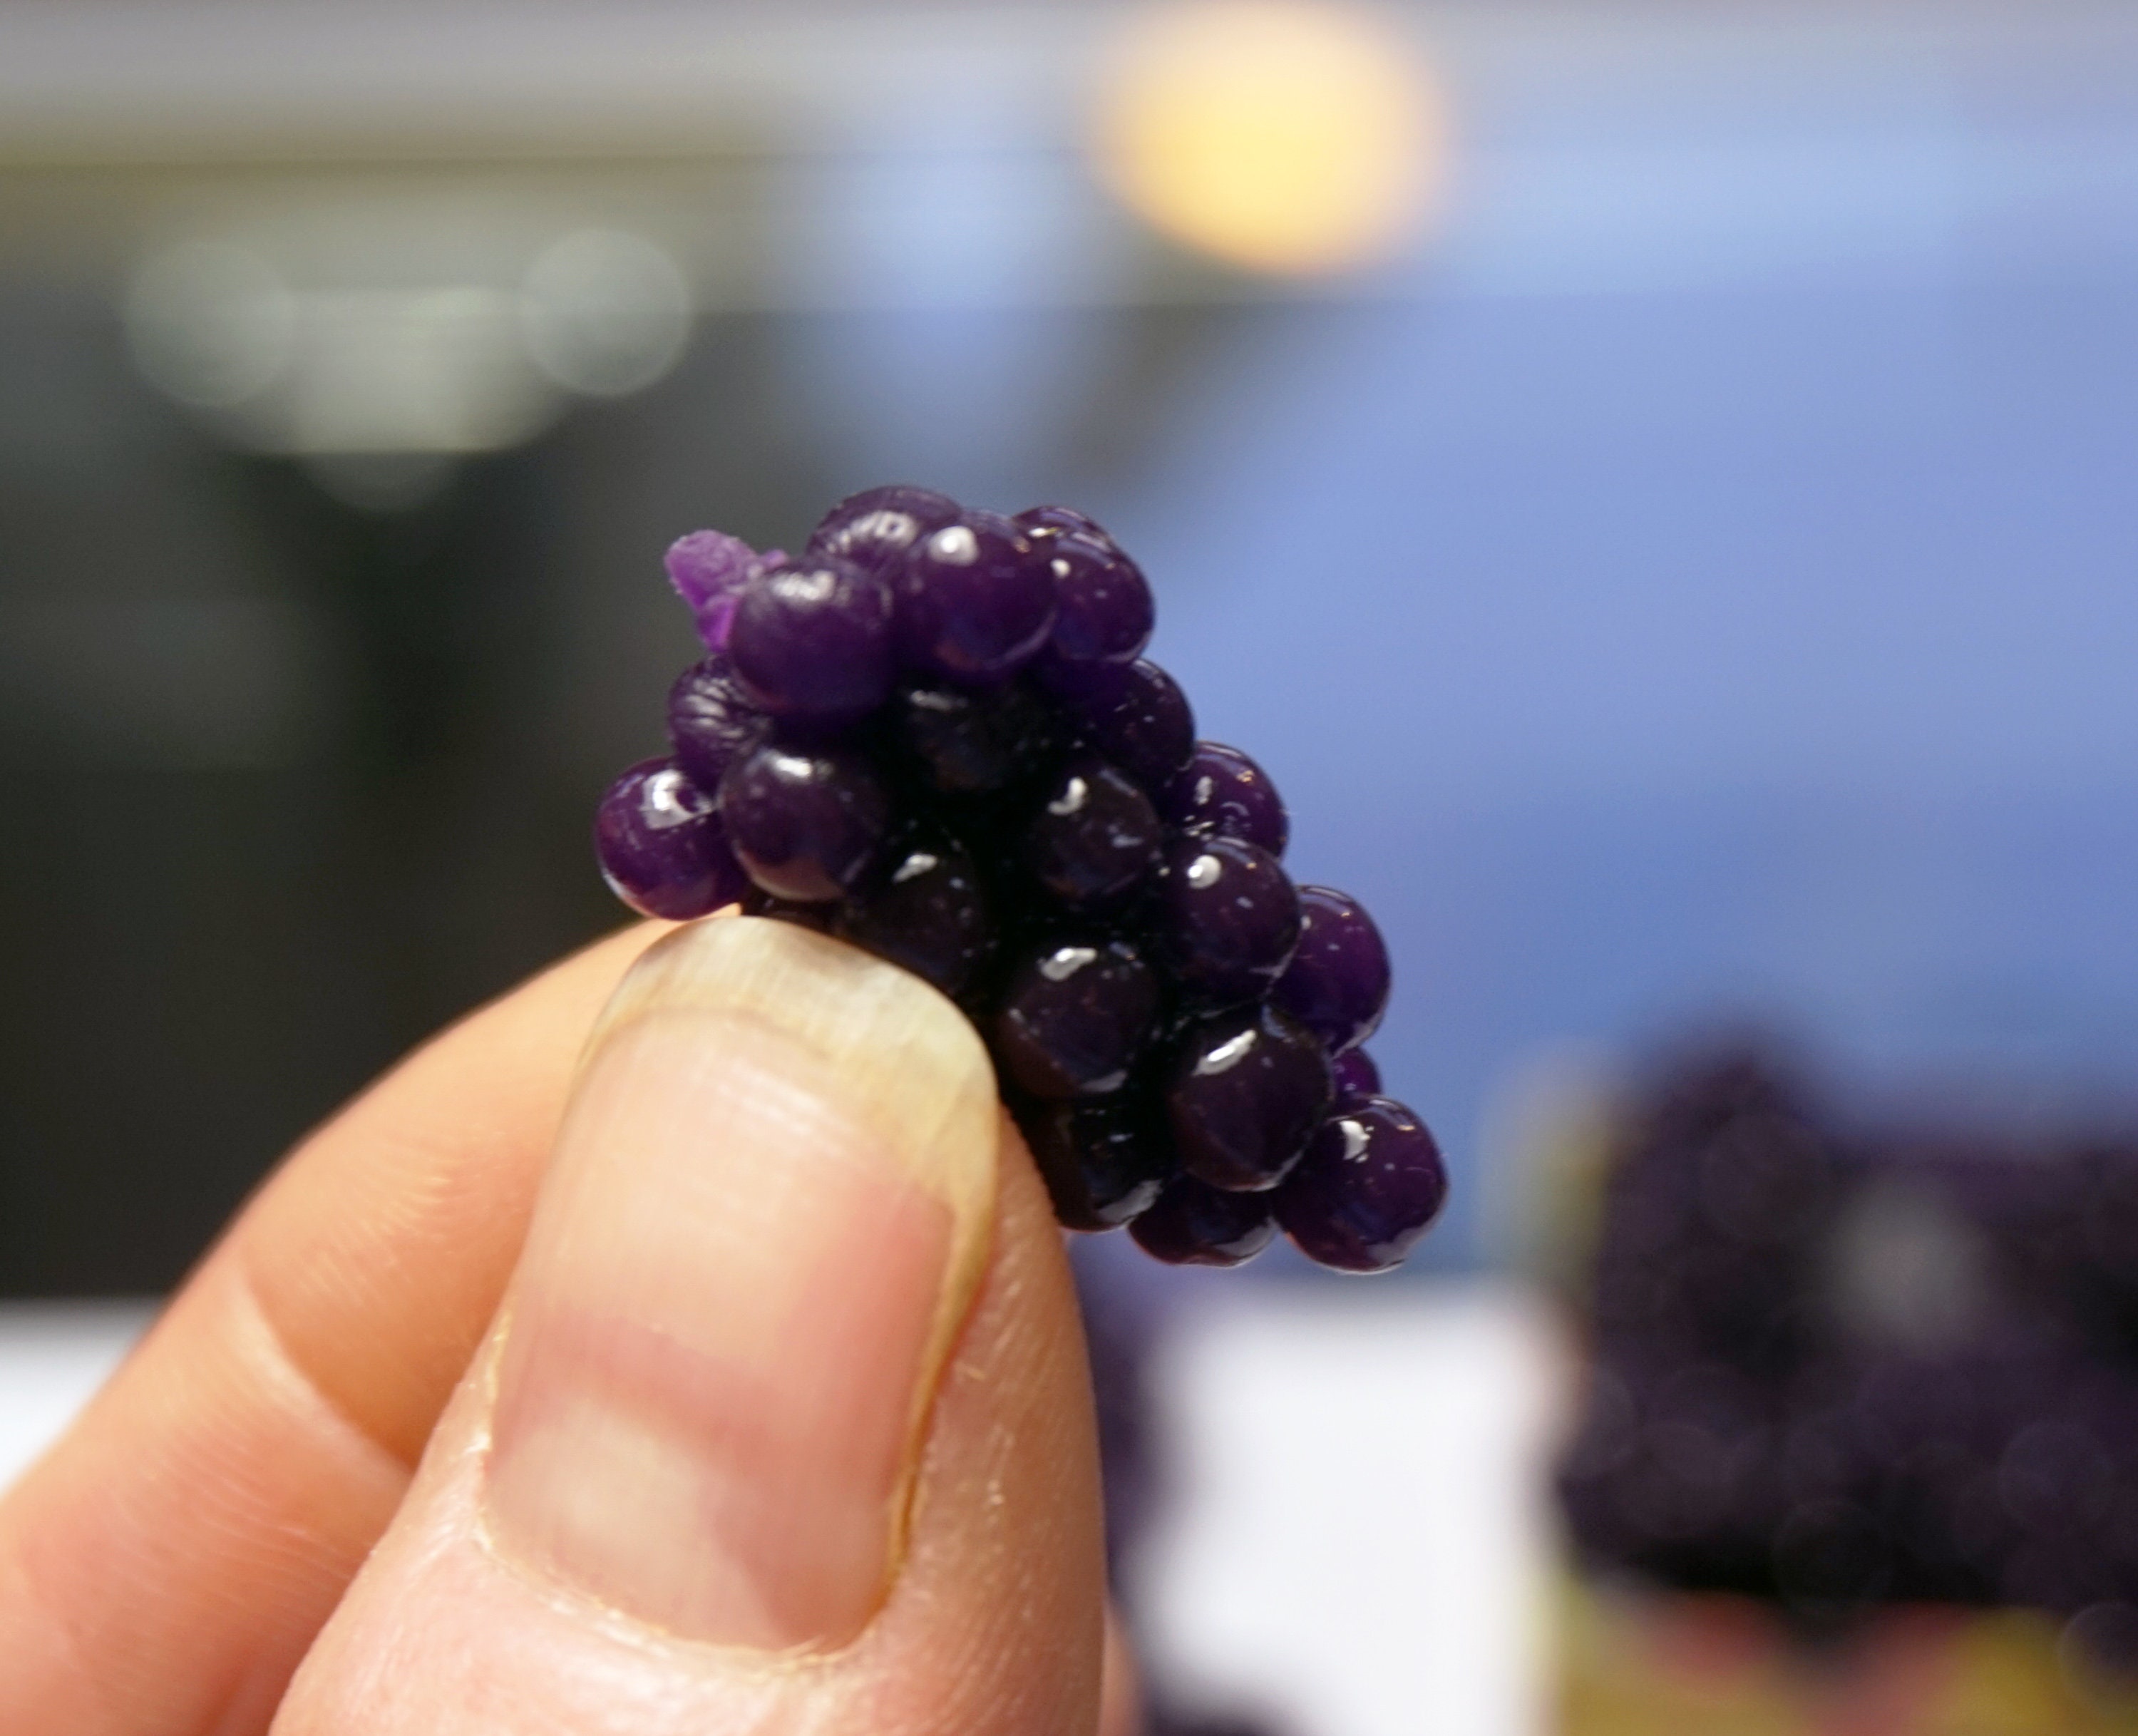 Large Purple Imitation Grapes - 11L